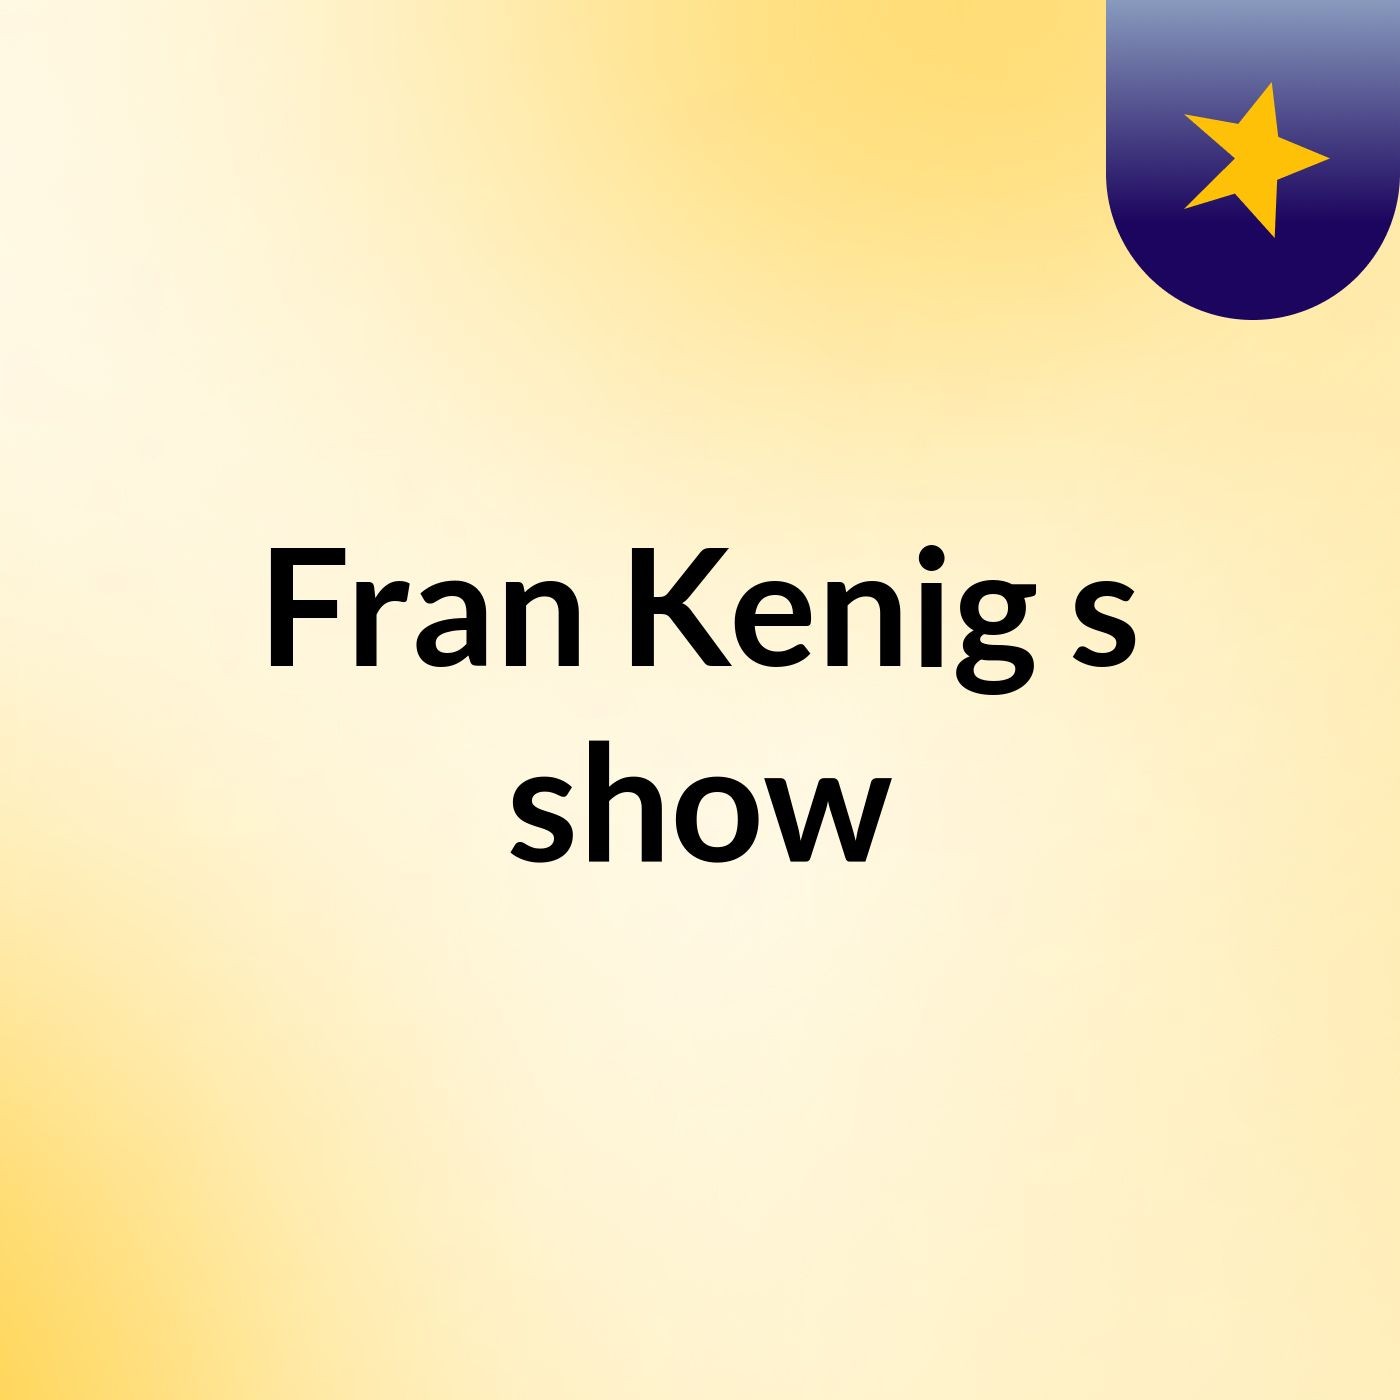 Fran Kenig's show